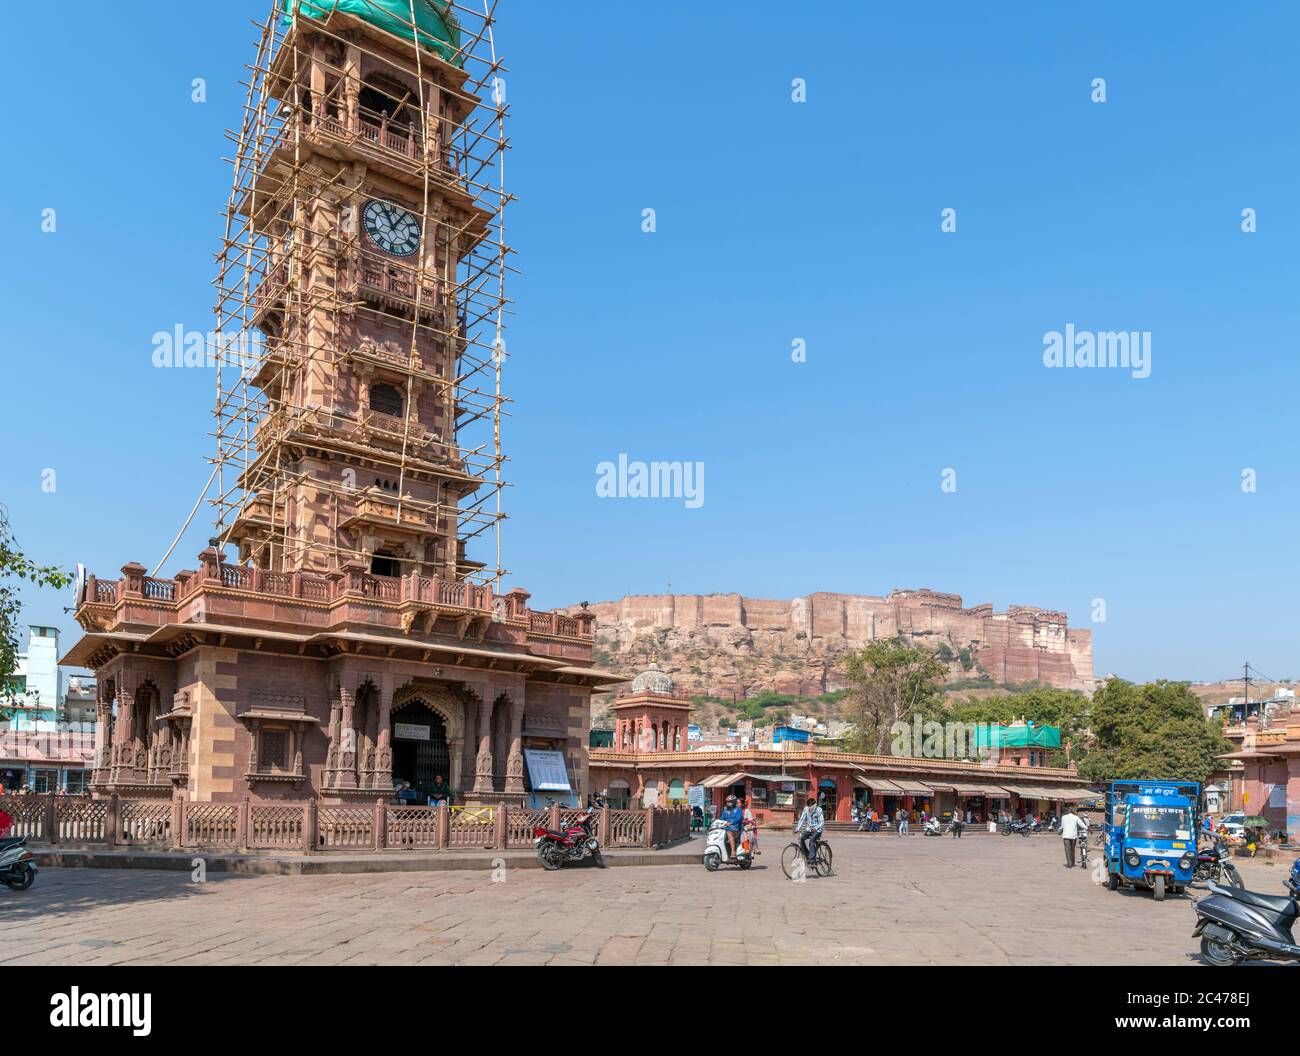 El Clocktower (Ghanta Ghar) en el mercado de Sardar con el fuerte Mehrangarh detrás, Jodhpur, Rajasthan, India Foto de stock